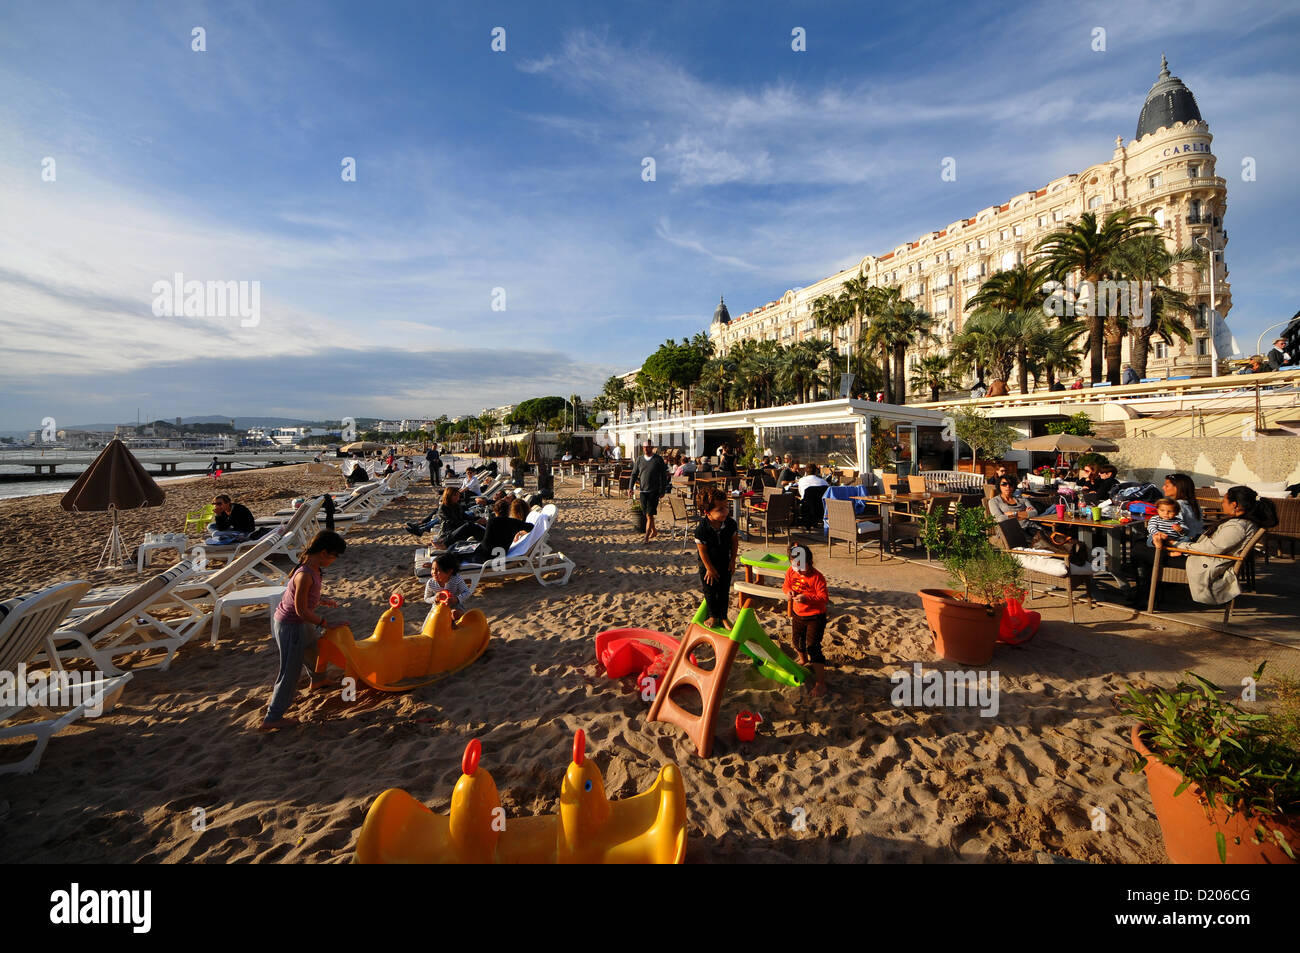 Plage du Carlton Hotel à la Croisette, Cannes, Cote d'Azur, France, Europe du Sud Banque D'Images